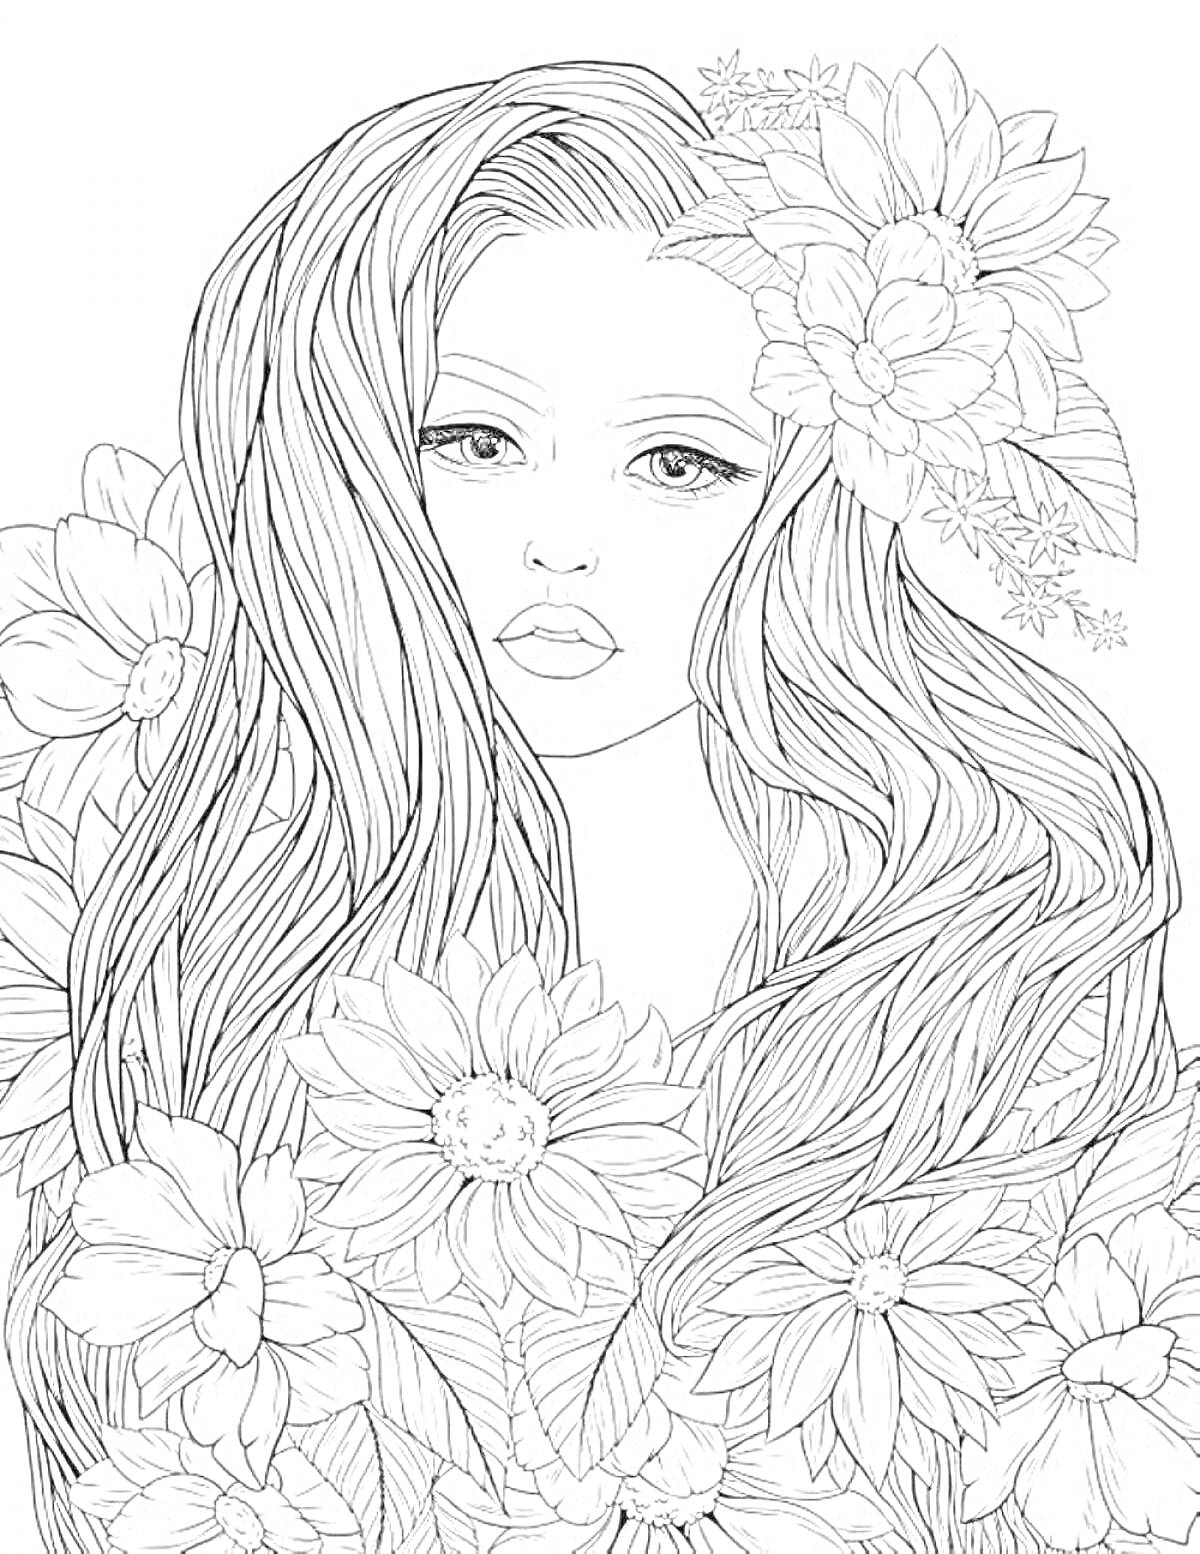 Раскраска Девушка с длинными волосами и цветами в волосах и вокруг нее